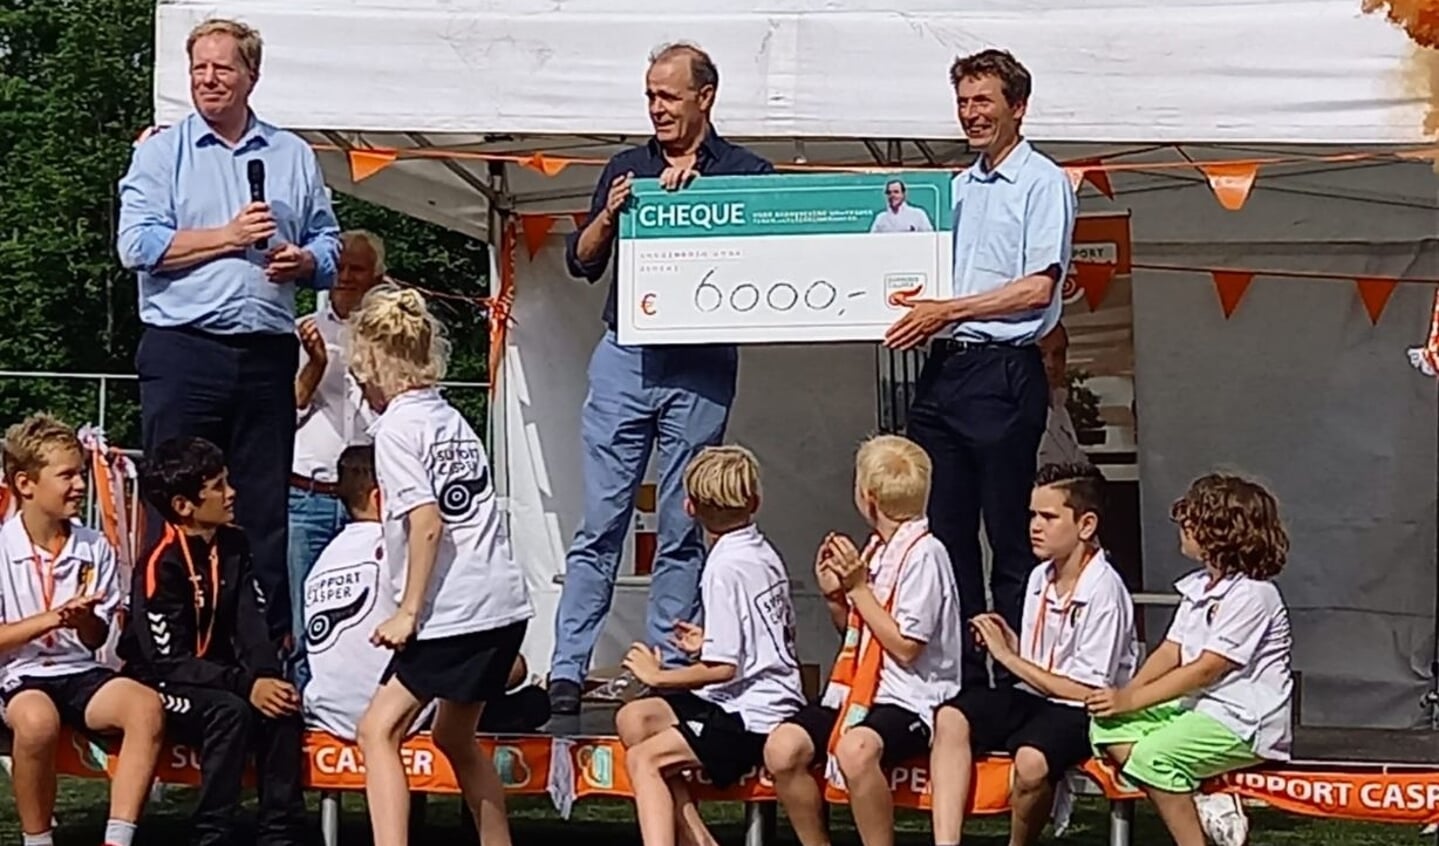 Burgemeester De Jong en wethouder Borgonjen overhandigden Casper van Eijck namens de organisatie een cheque van 6000 euro.  